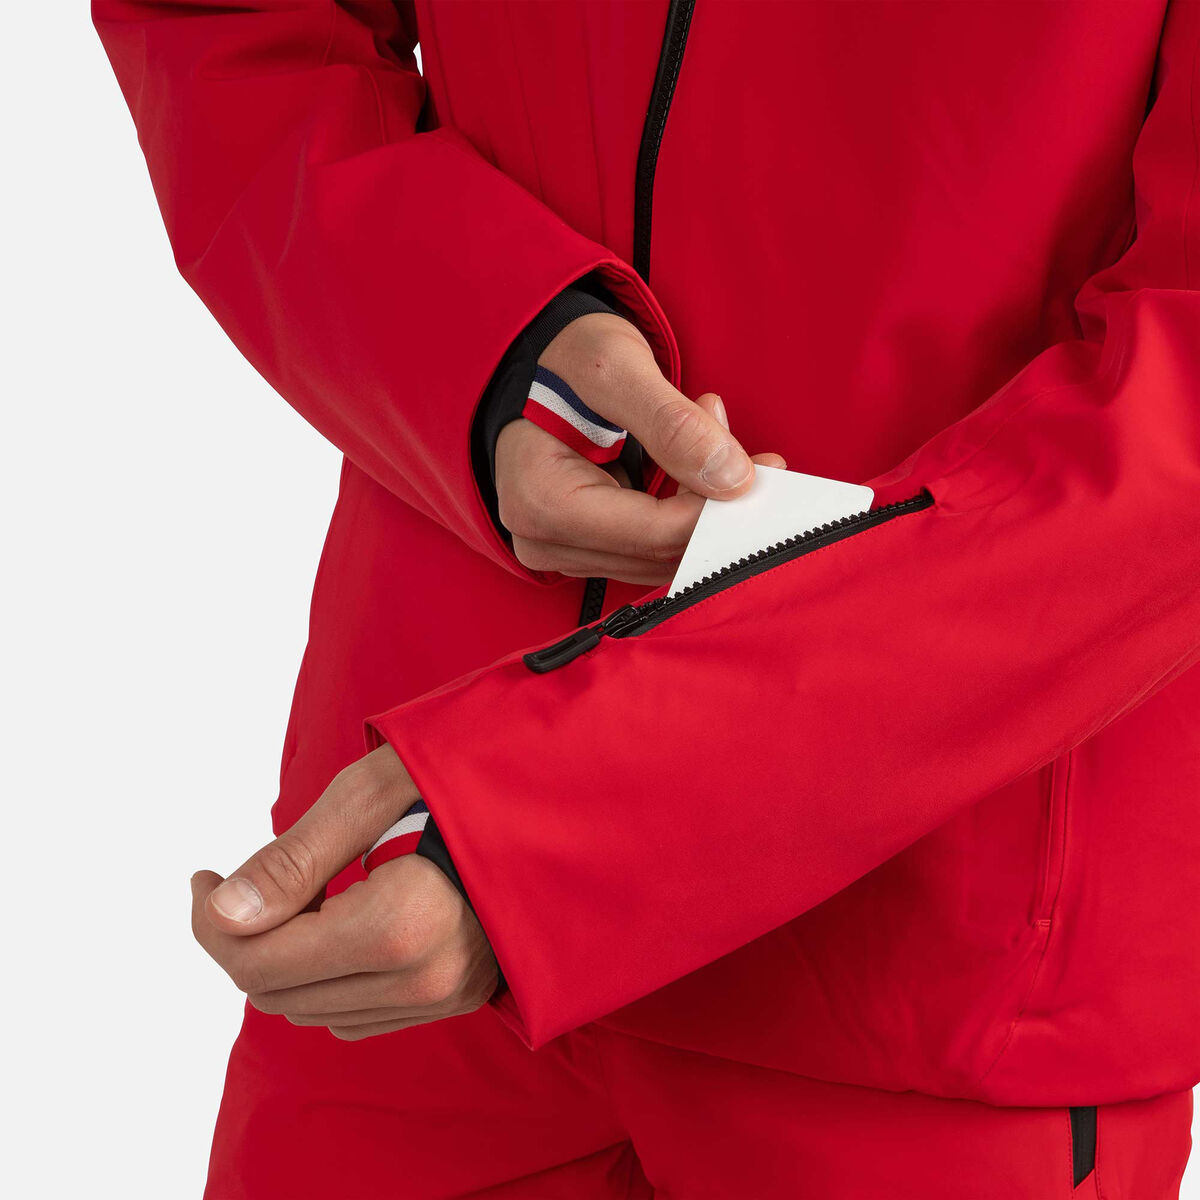 Rossignol Men's Strato STR Ski Jacket red